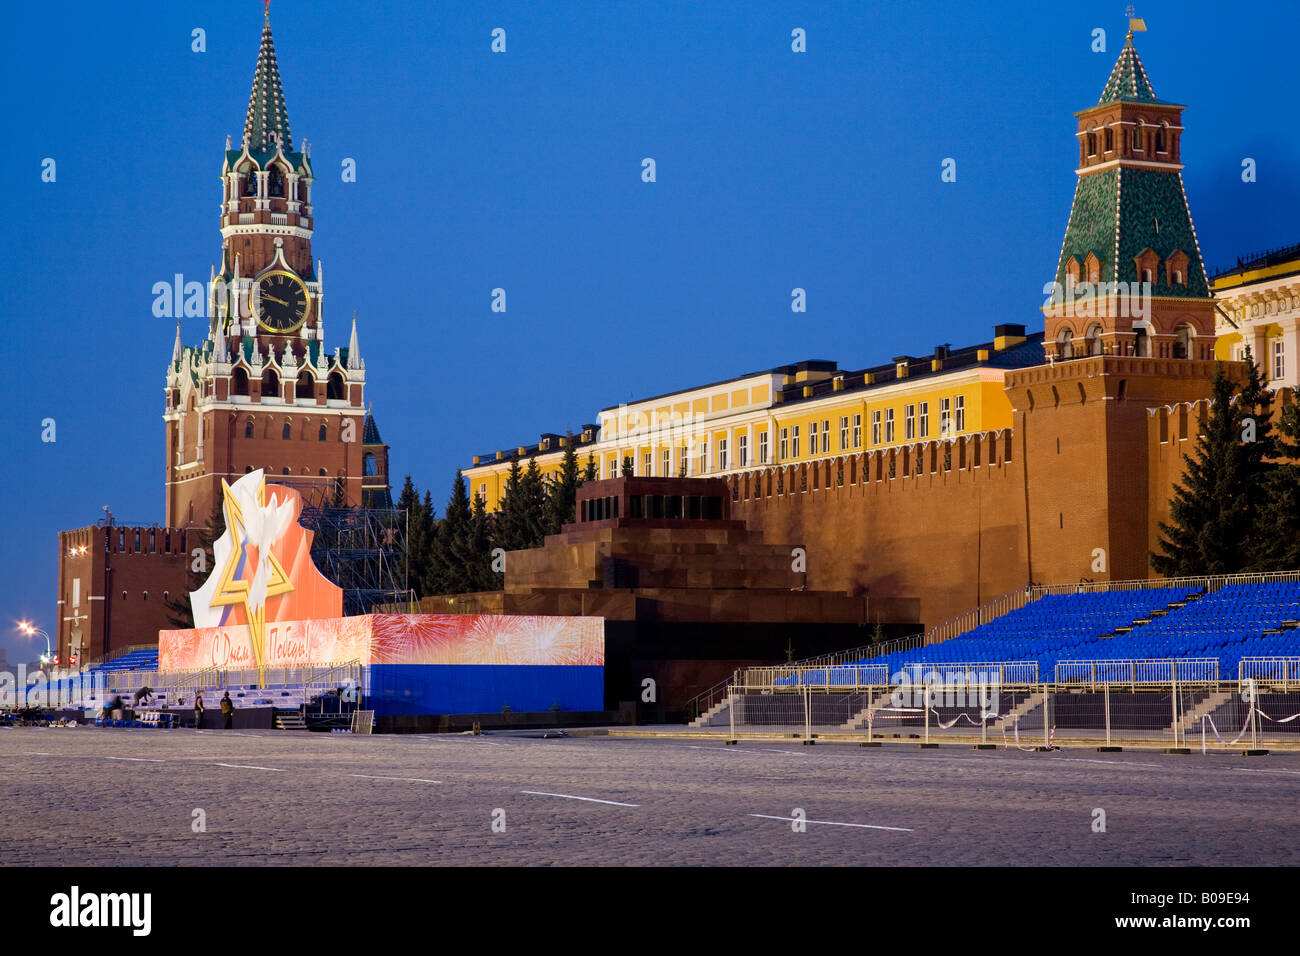 Masse steht und Fahnen, Lenin-Mausoleum und Spasskaja-Turm des Kreml vom Roten Platz in Moskau, Russland, russische Federat Stockfoto